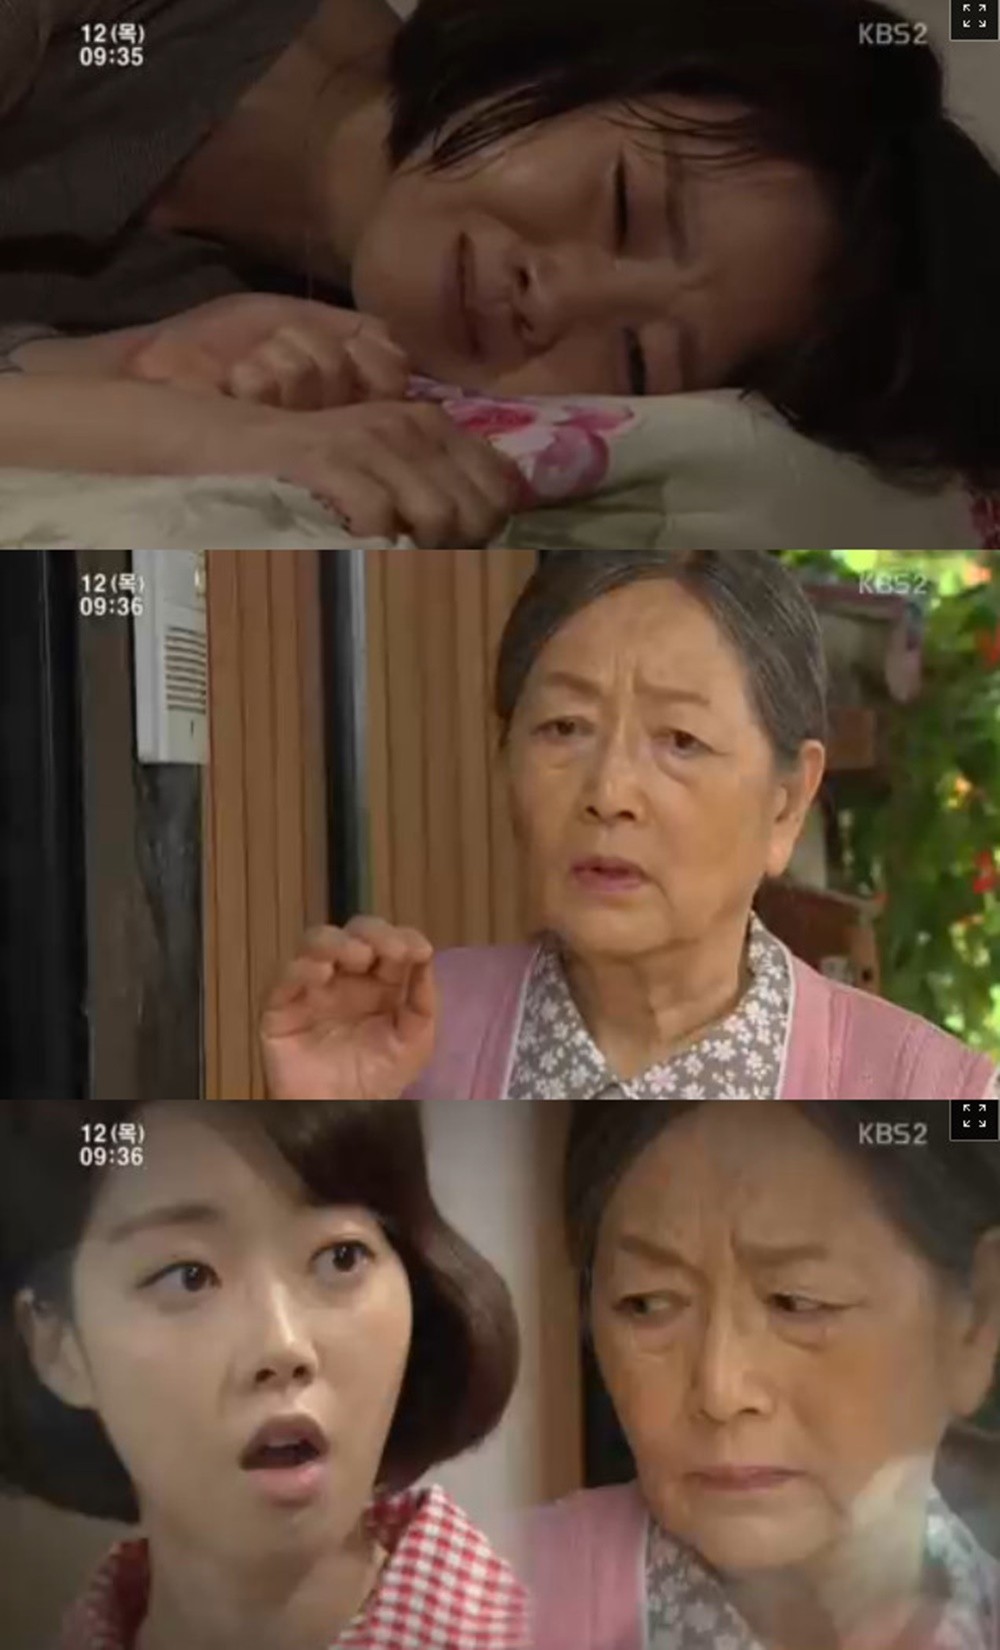 KBS2TV ‘TV소설 꽃피어라 달순아’ 방송캡쳐